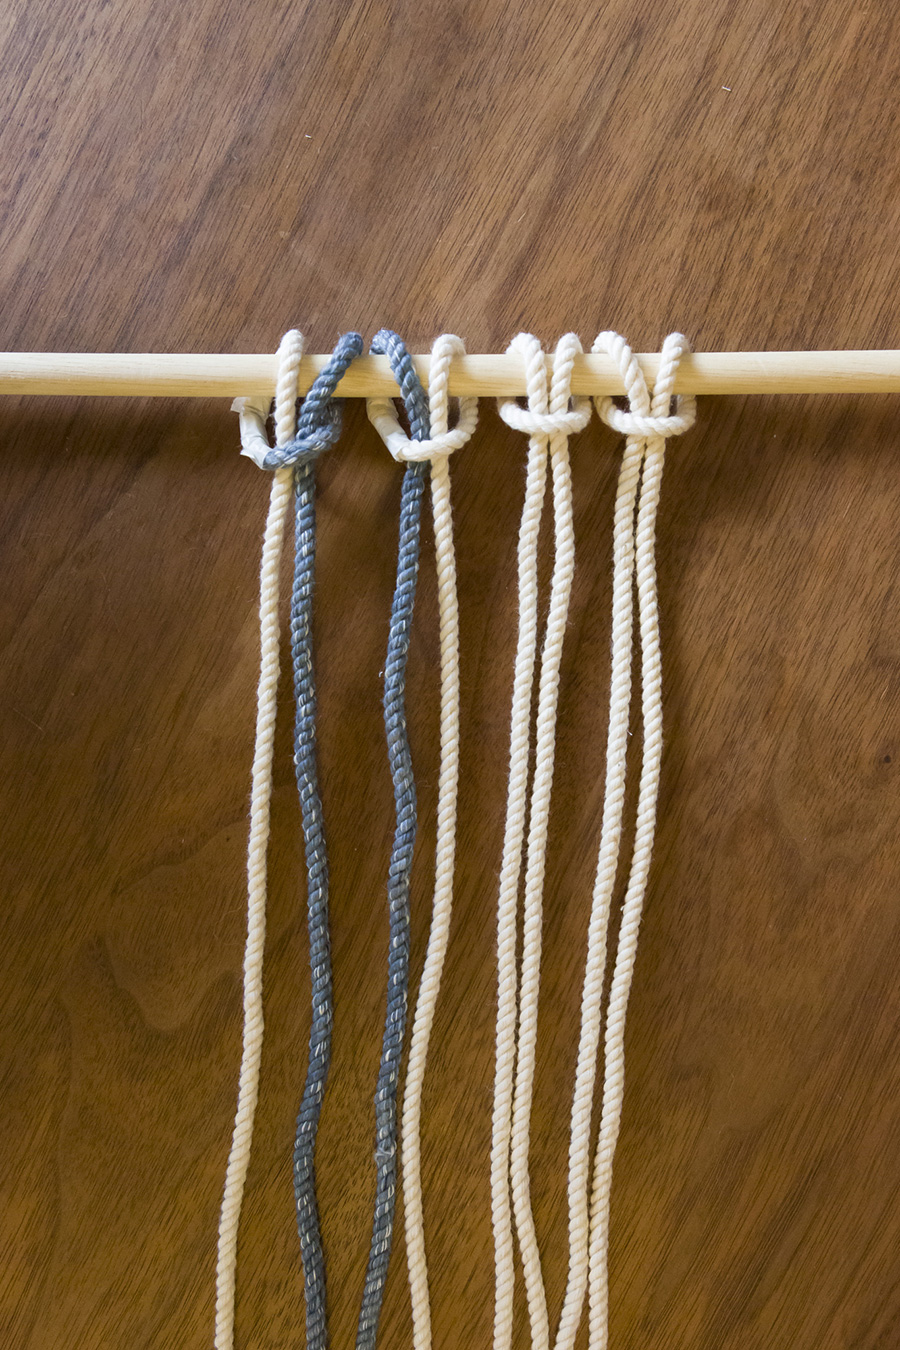 ①４本のロープを２つに折って丸棒に結び（わかりやすいように一部色を変えています）、８本のロープを編んでいく。